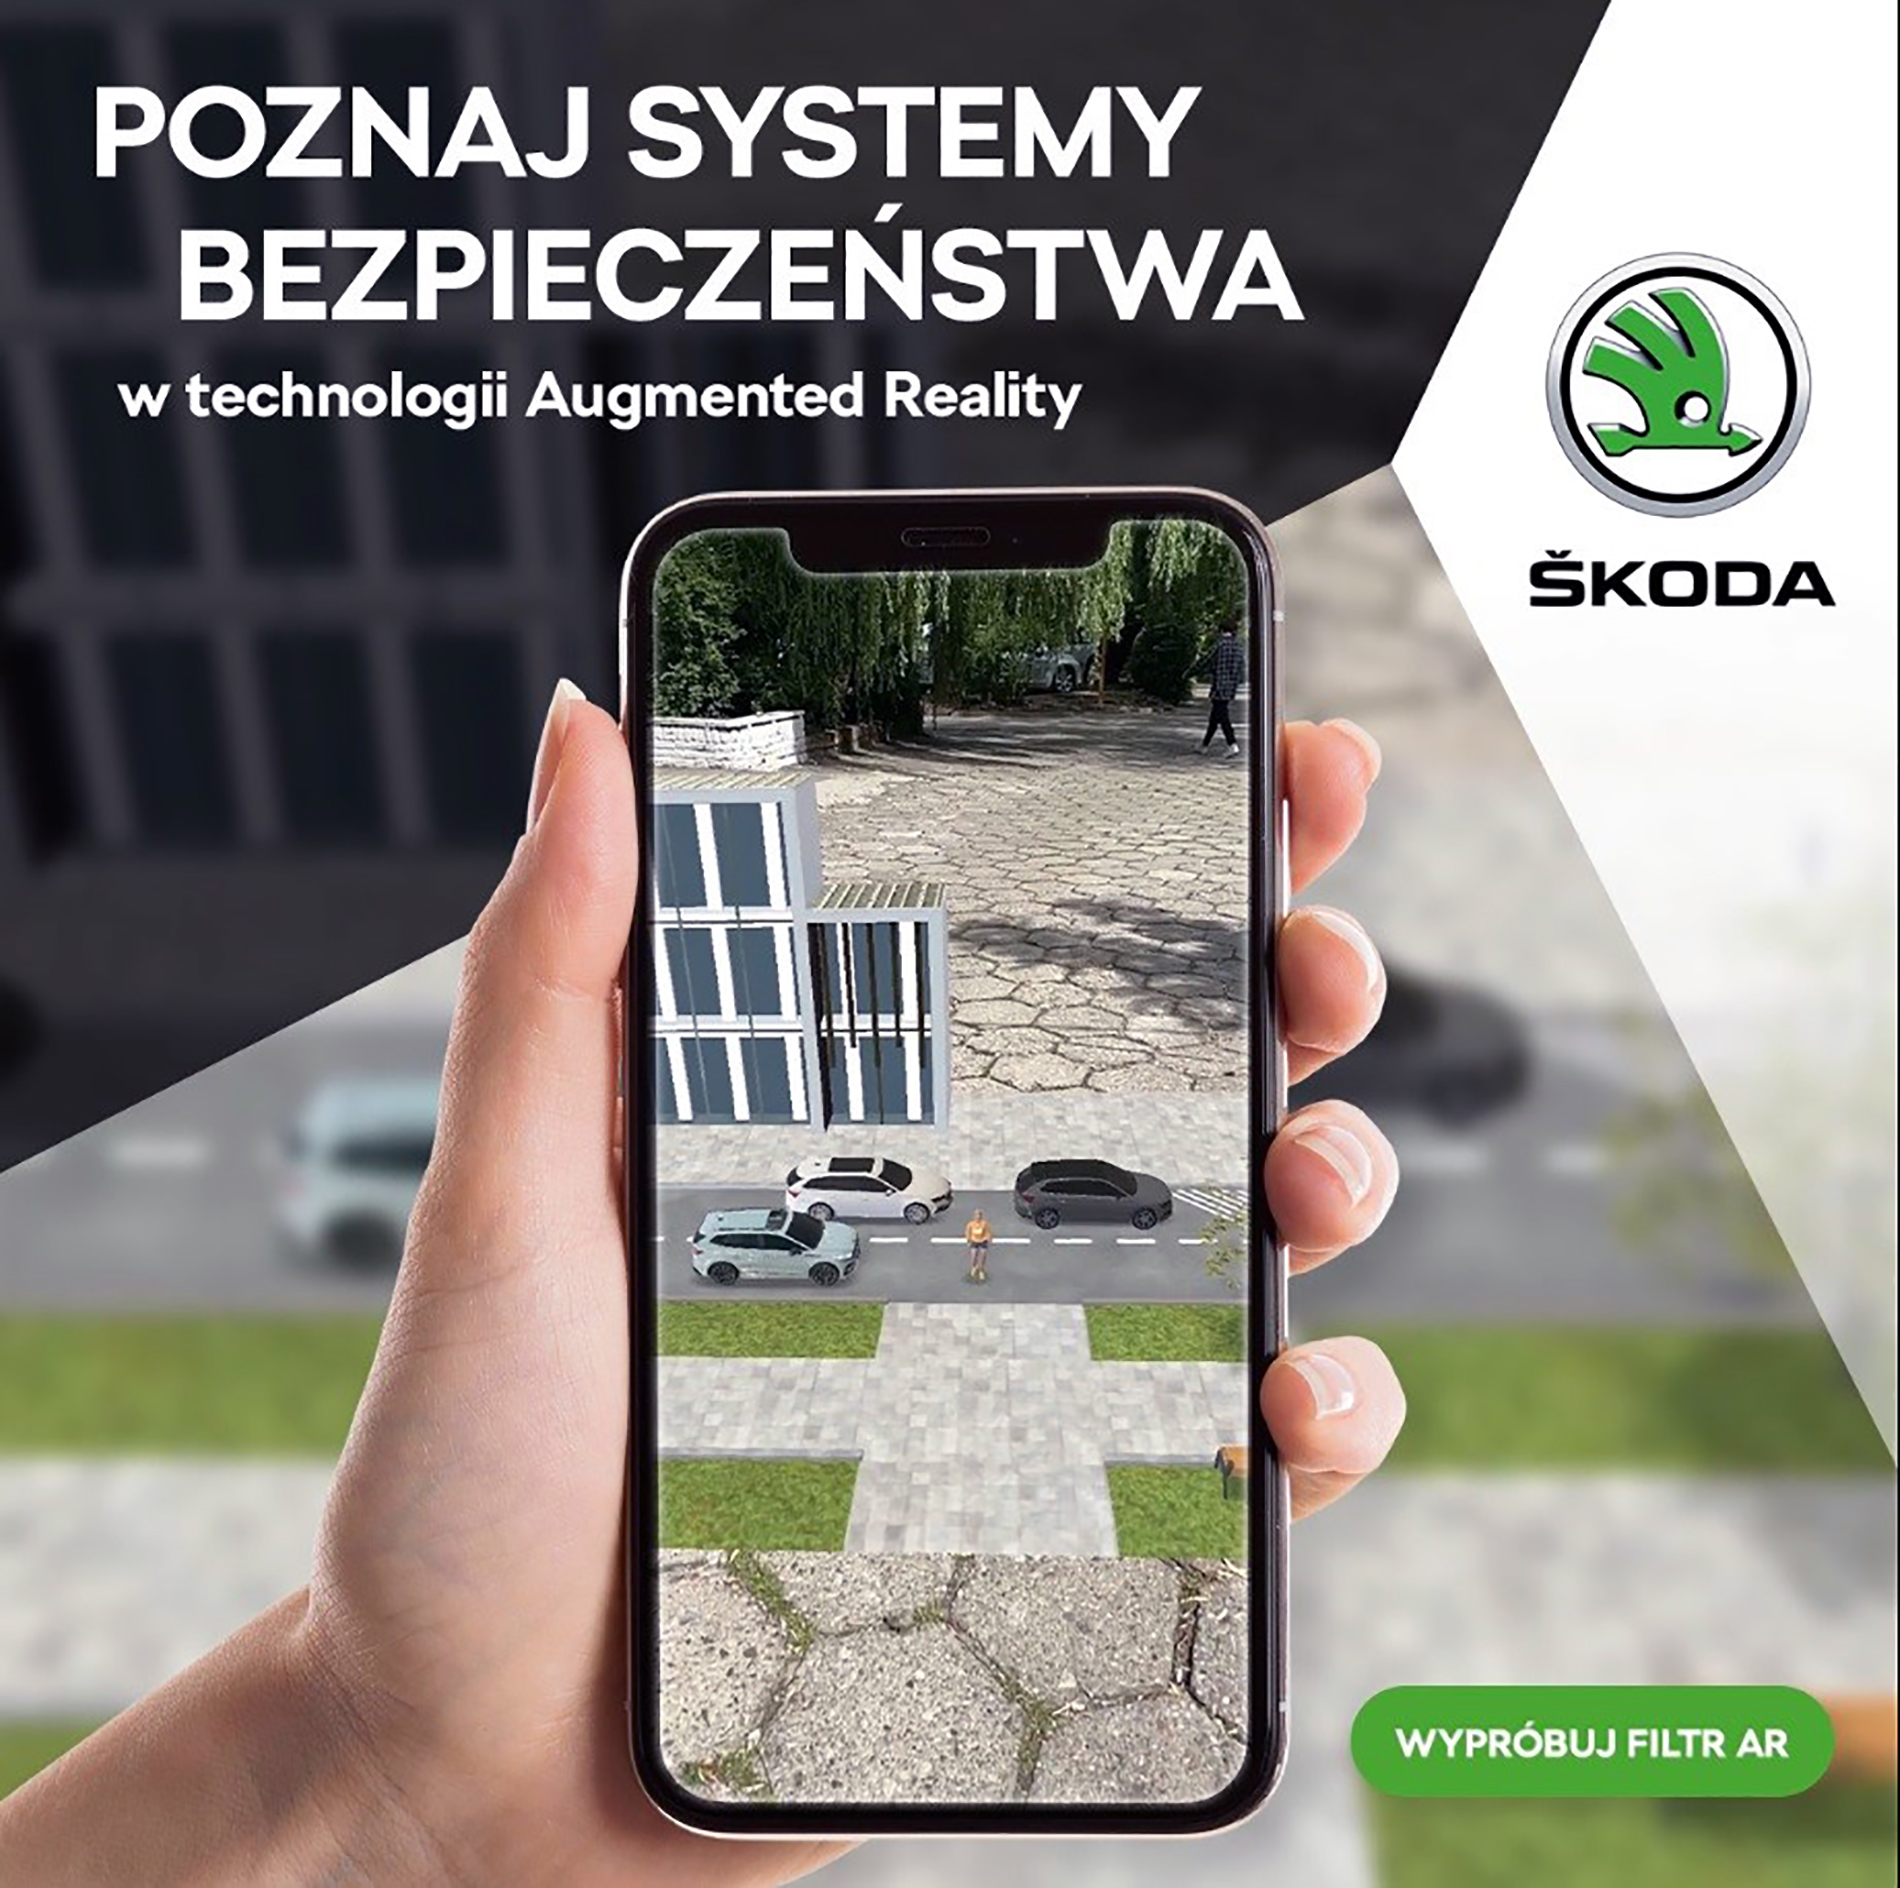 Škoda Polska prezentuje systemy bezpieczeństwa w technologii rozszerzonej rzeczywistości